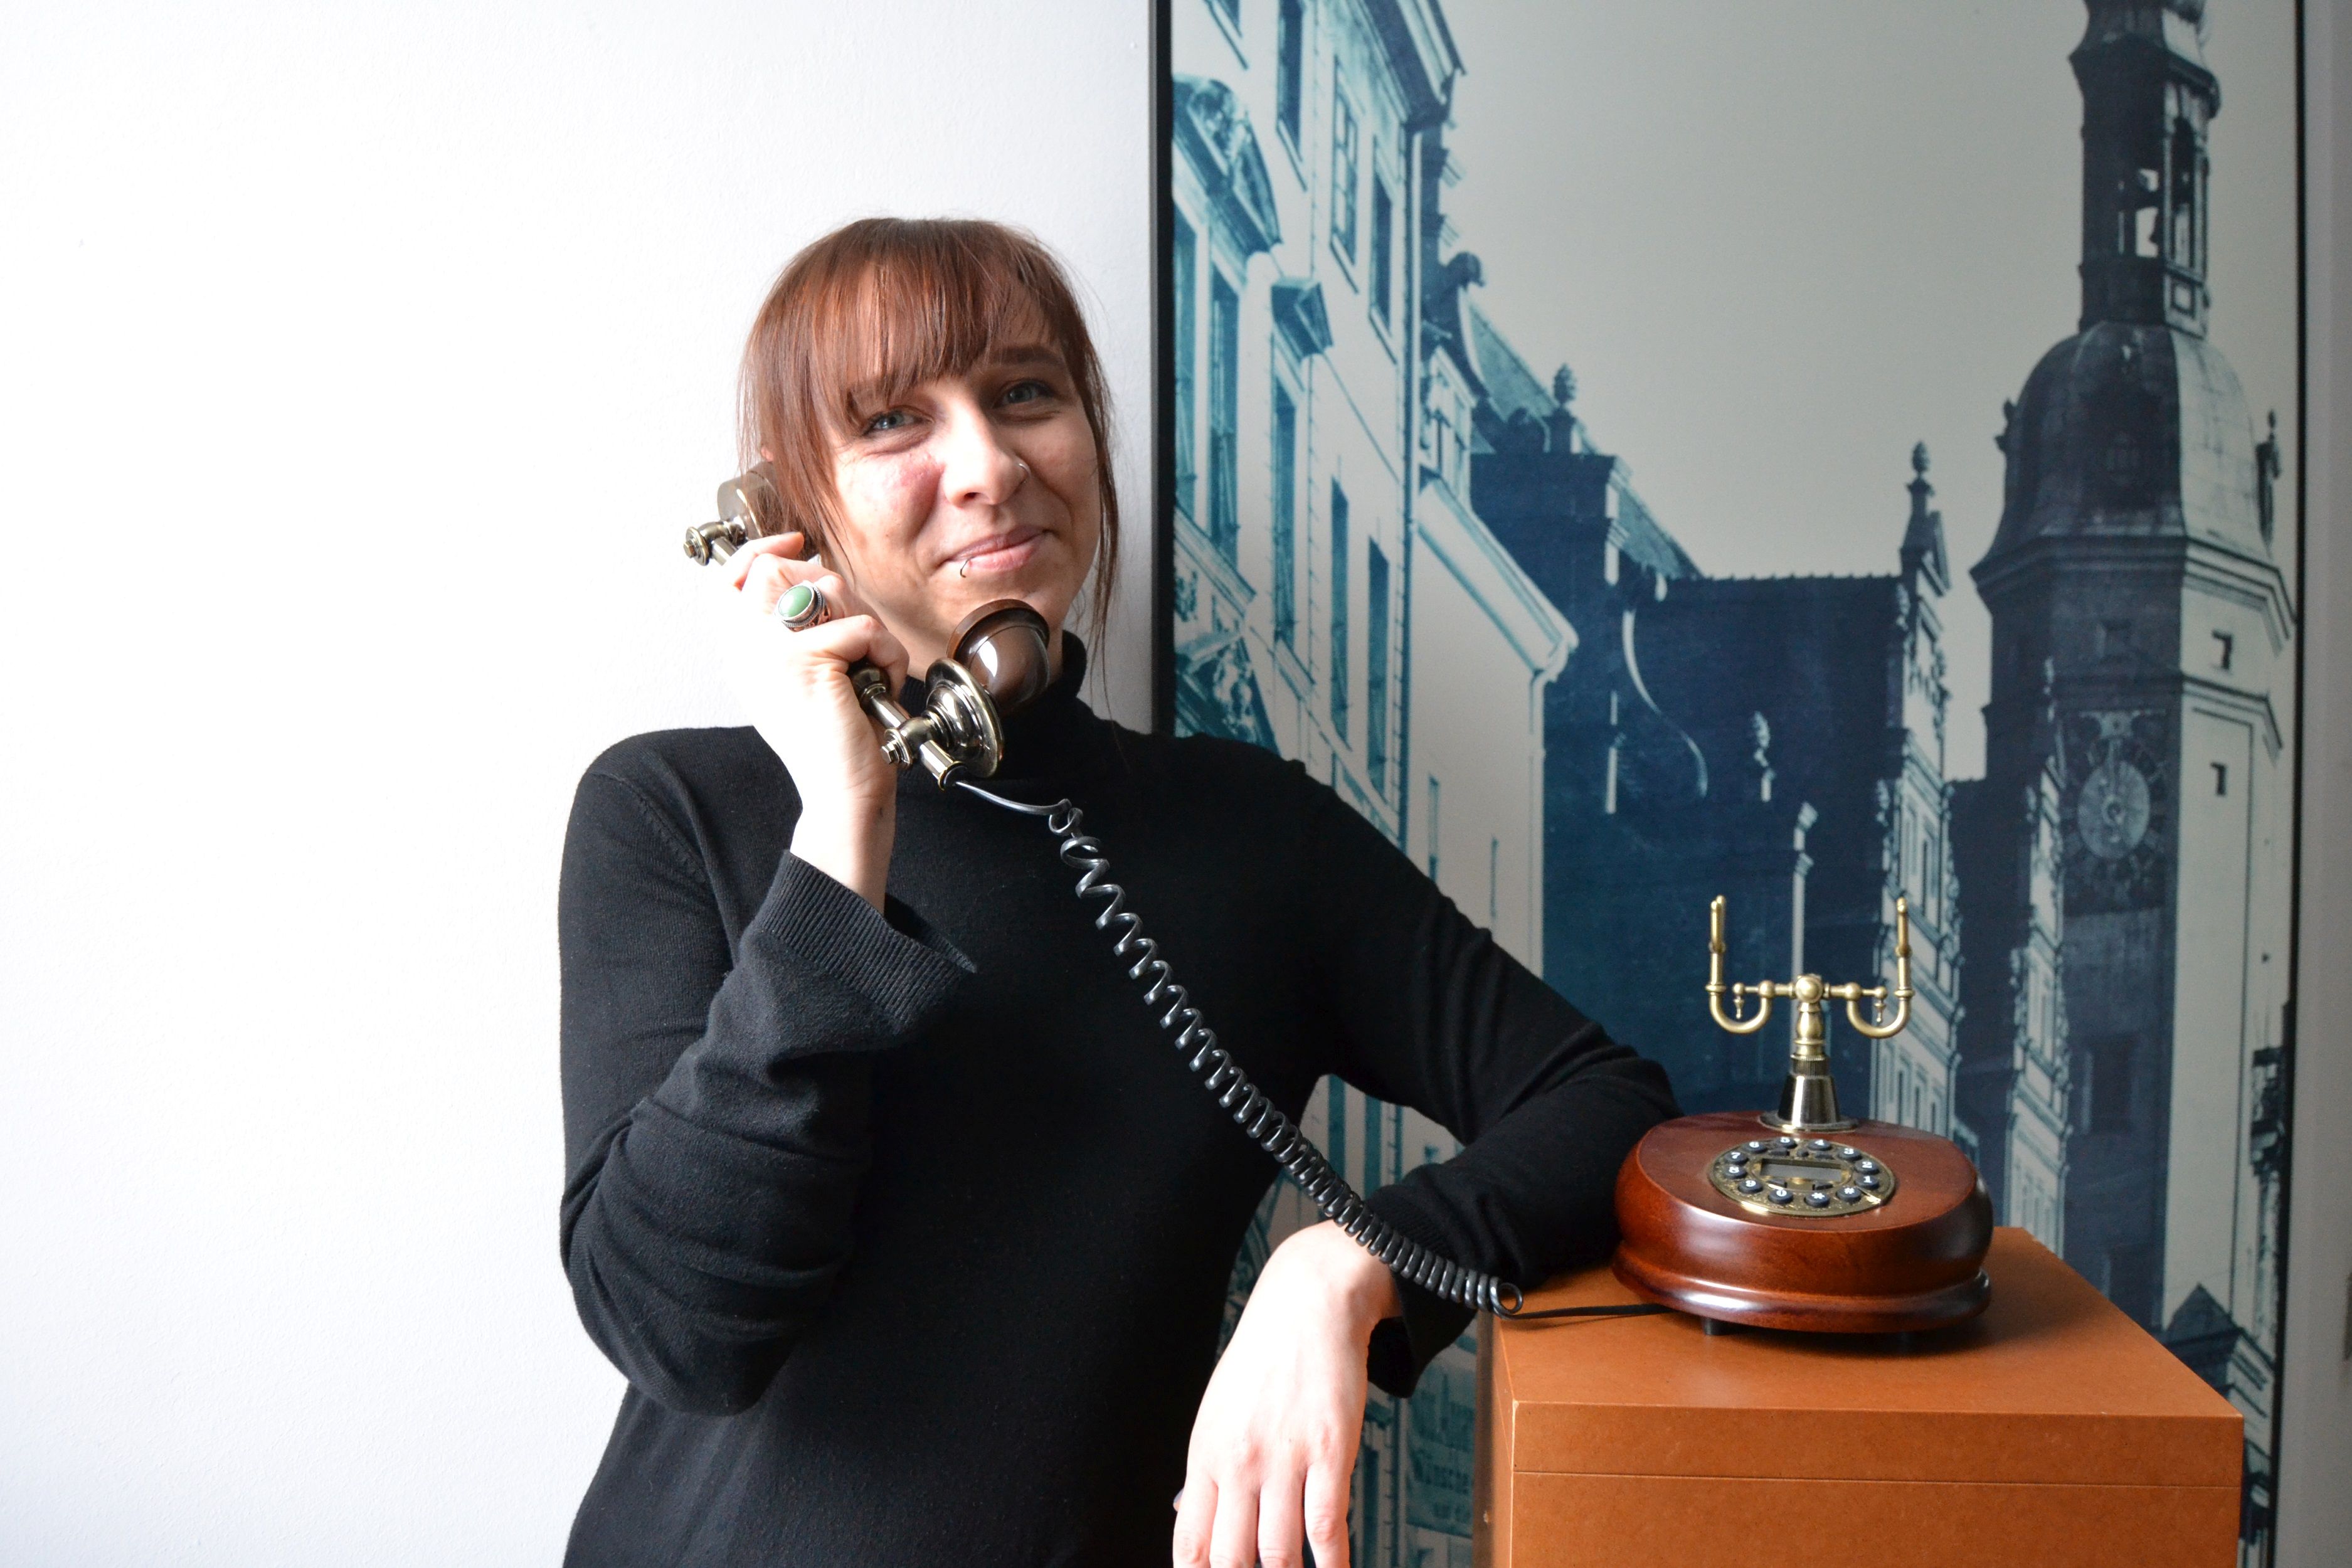 Frau Annemarie Riemer als Vermittlerin am Telefon